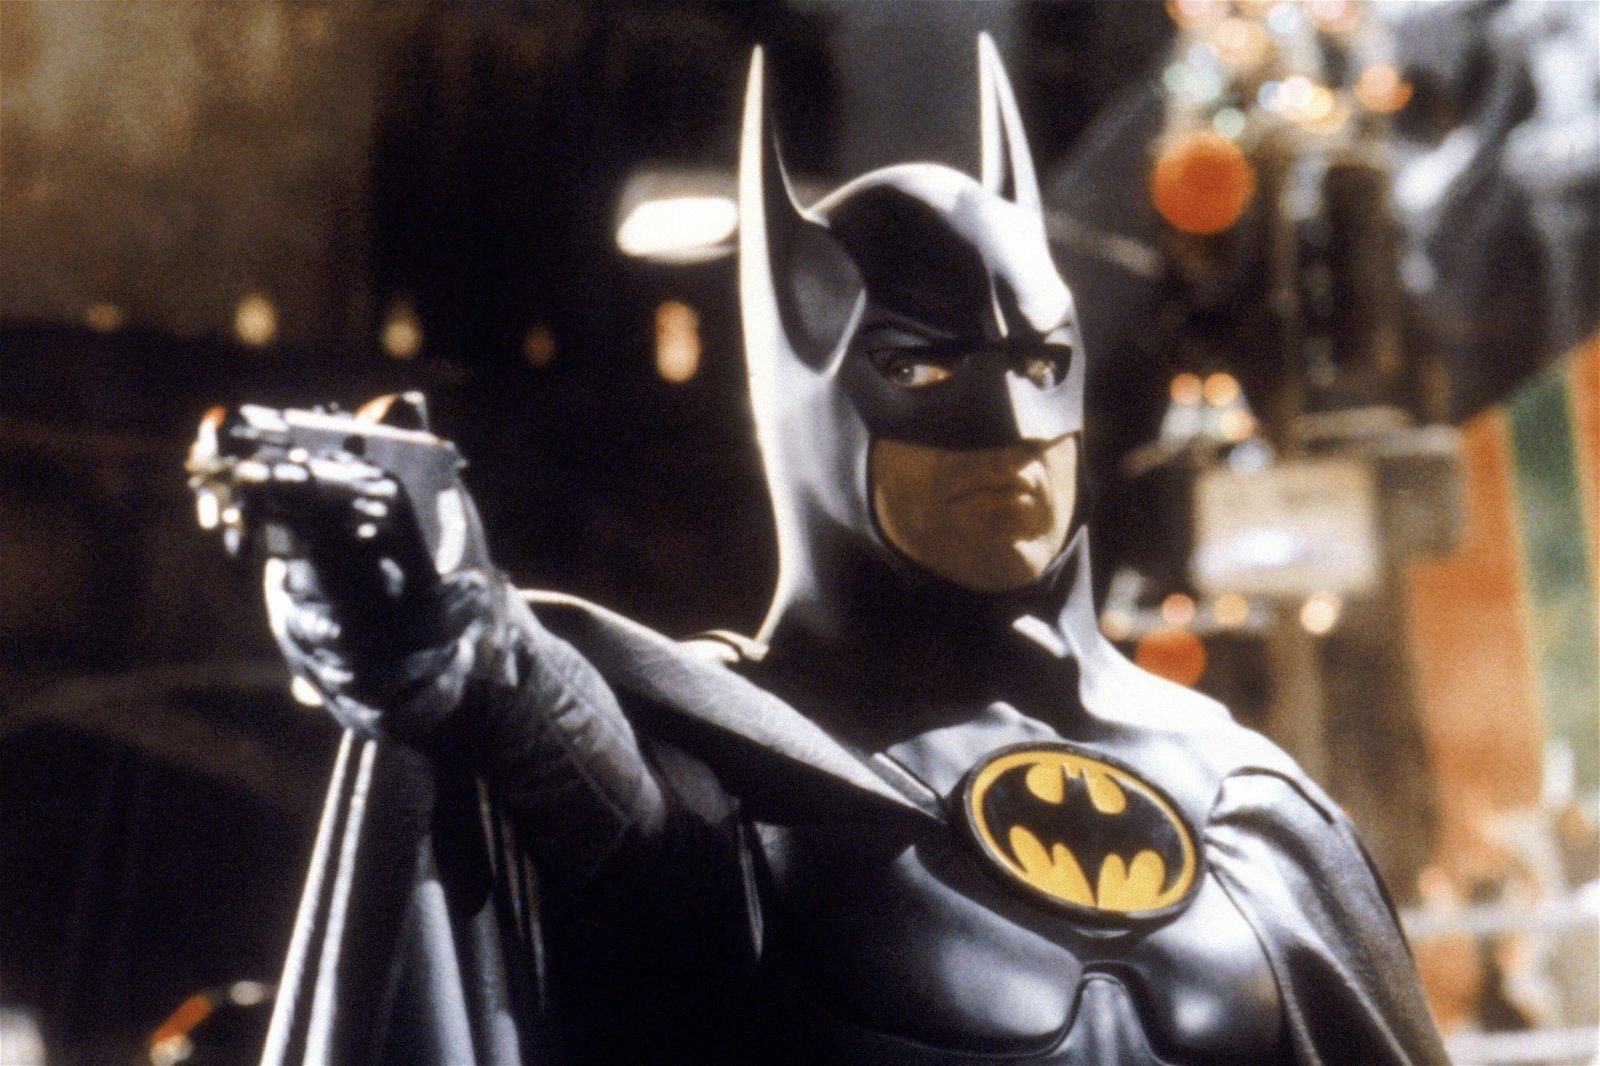 EXTRA: Michael Keaton återvänder som Batman